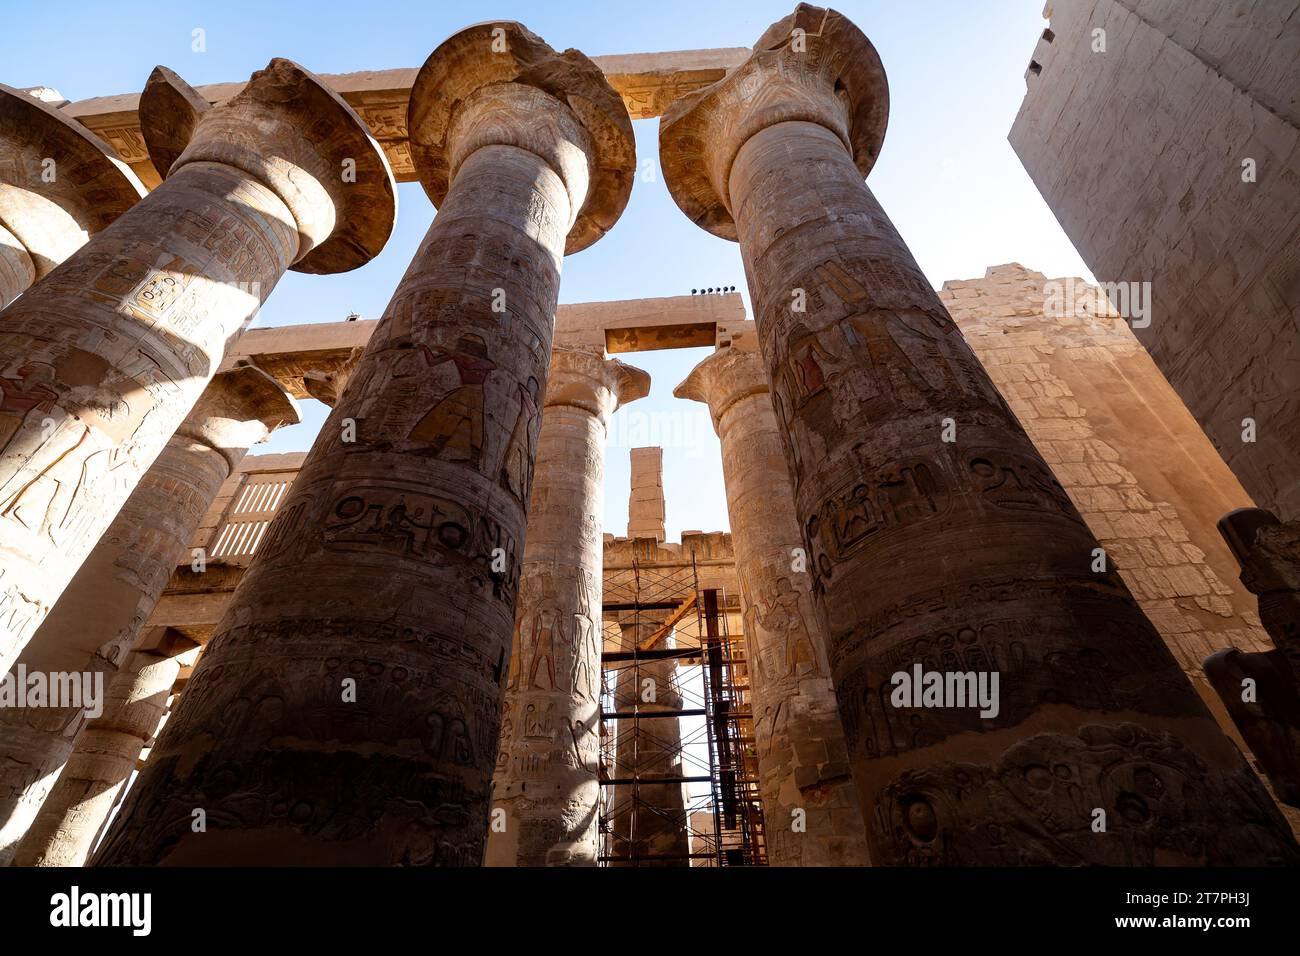 Rilievi geroglifici sulle gigantesche colonne delle antiche rovine del complesso del Tempio di Karnak nella città del deserto egiziano di Luxor Foto Stock